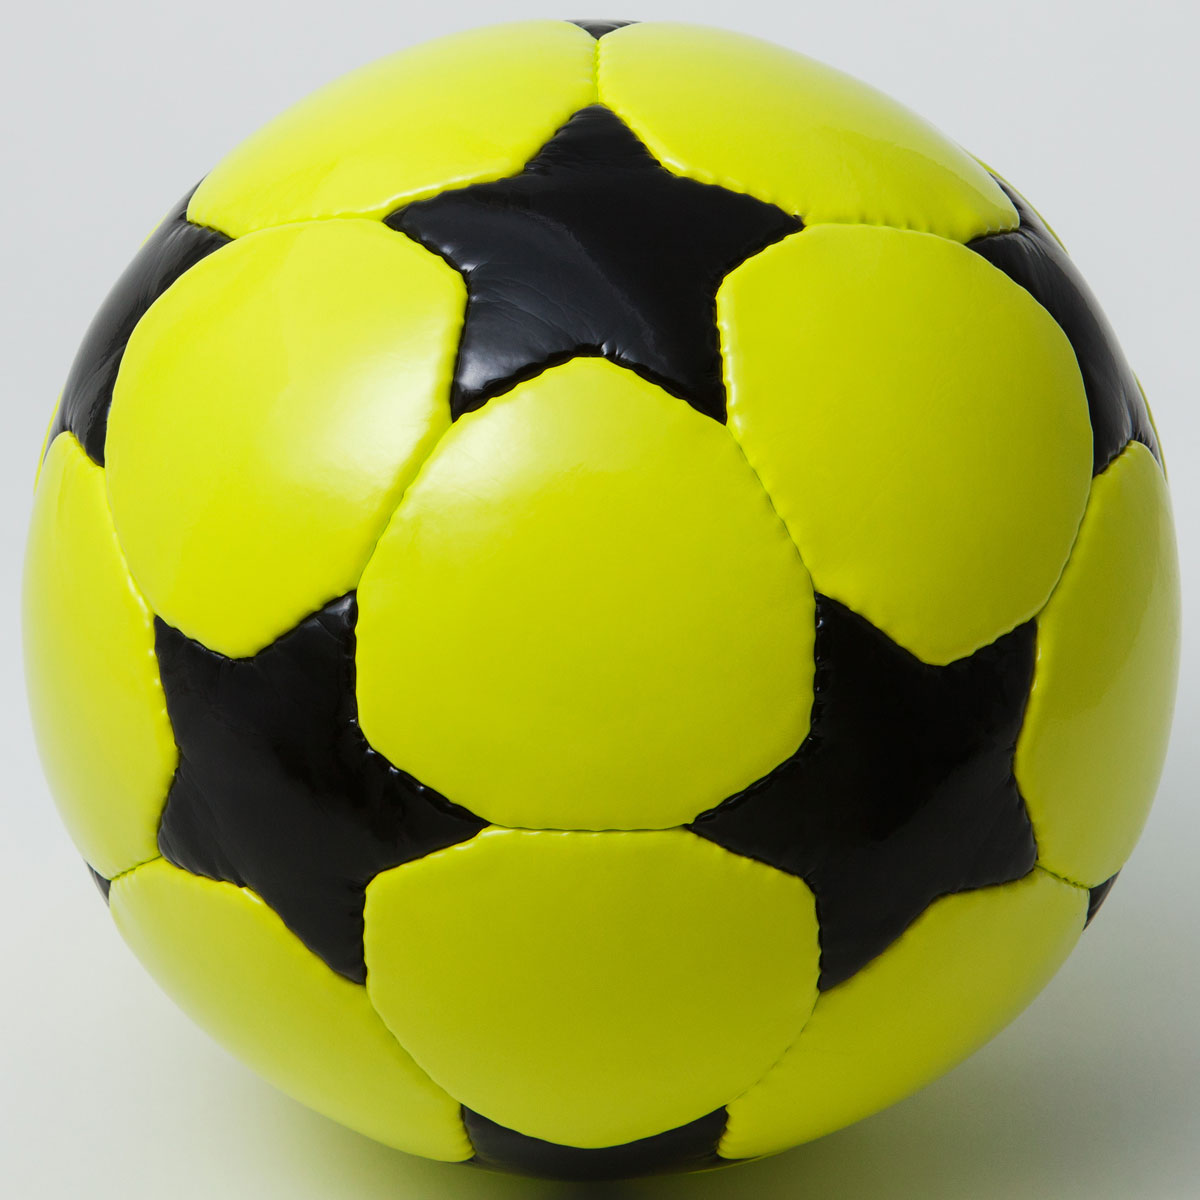 フットサルボール STAR BALL サッカーボール フットサルボール スターボール ブラック/ライム